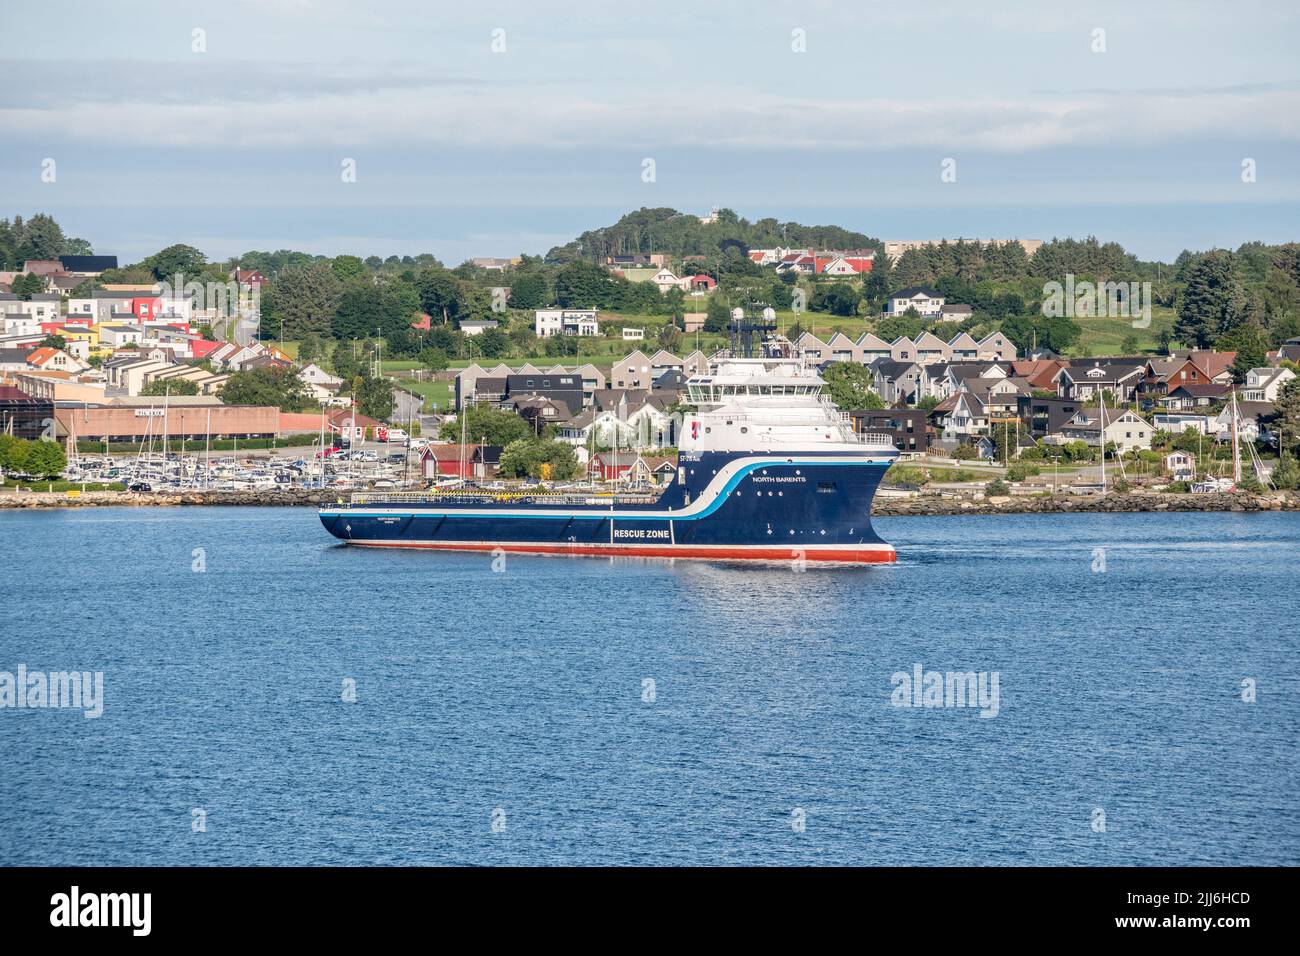 North Barents es un buque de suministro offshore que opera desde la ciudad noruega de Stavanger, Noruega. Foto de stock